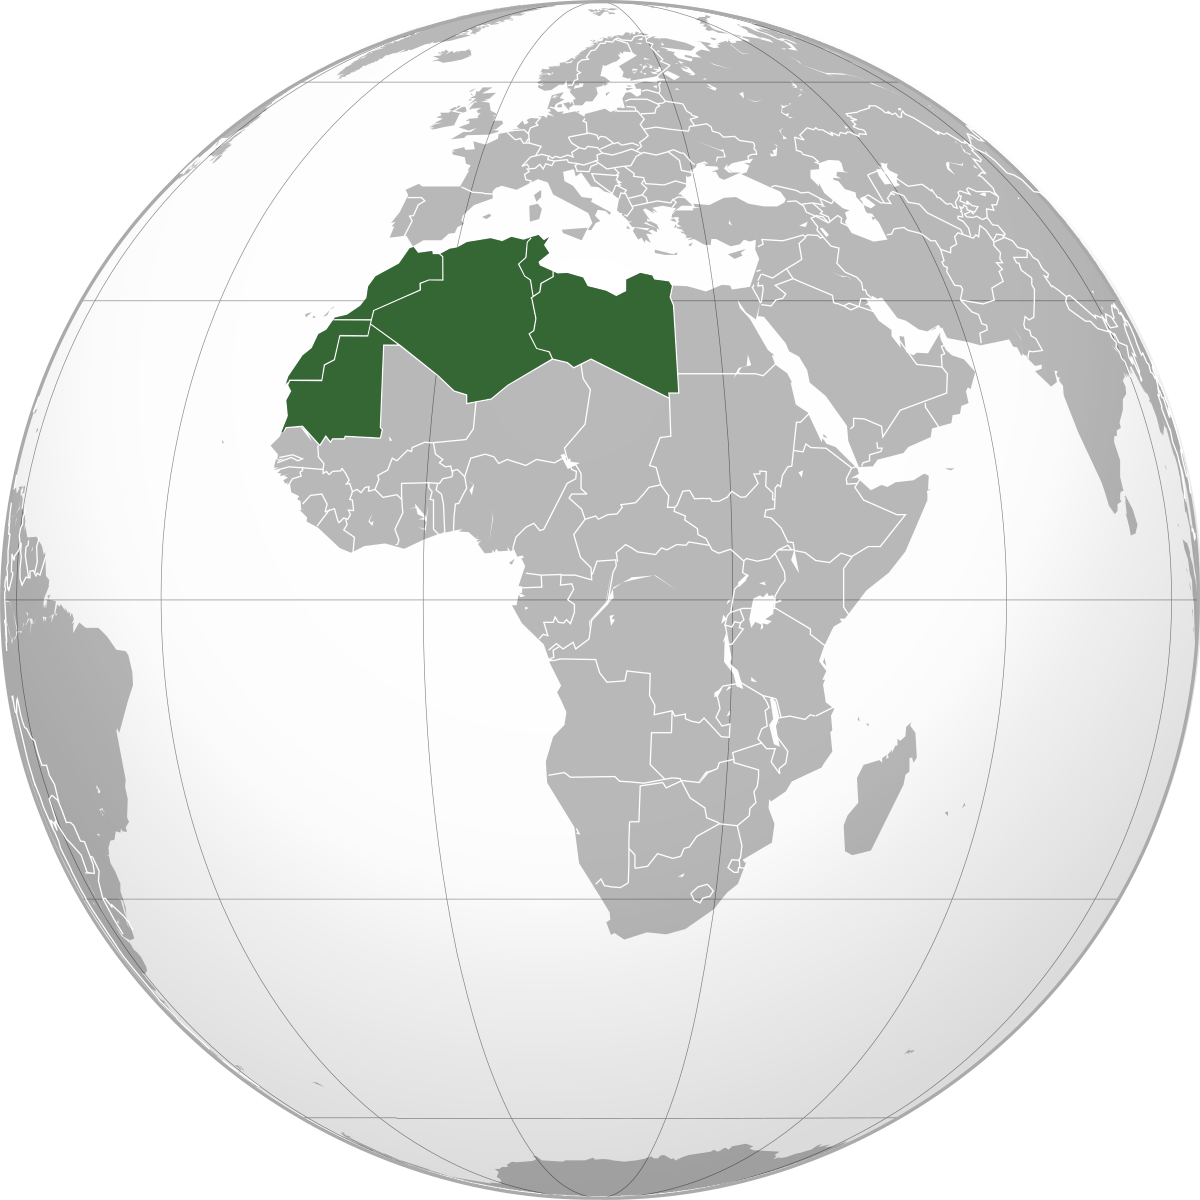 صورة لخريطة العالم و موضح فيها دول اتحاد المغرب العربي.